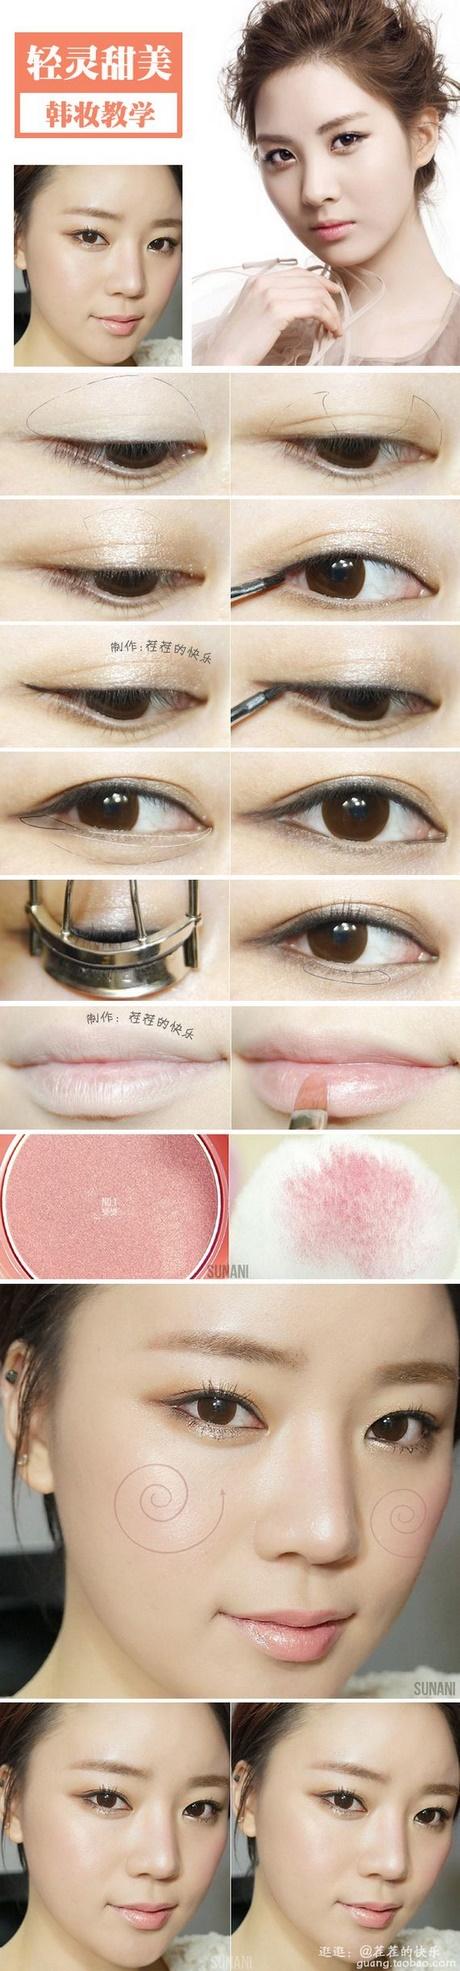 natural-eye-makeup-tutorial-for-asian-eyes-10_2 Natuurlijke make-up les voor Aziatische ogen